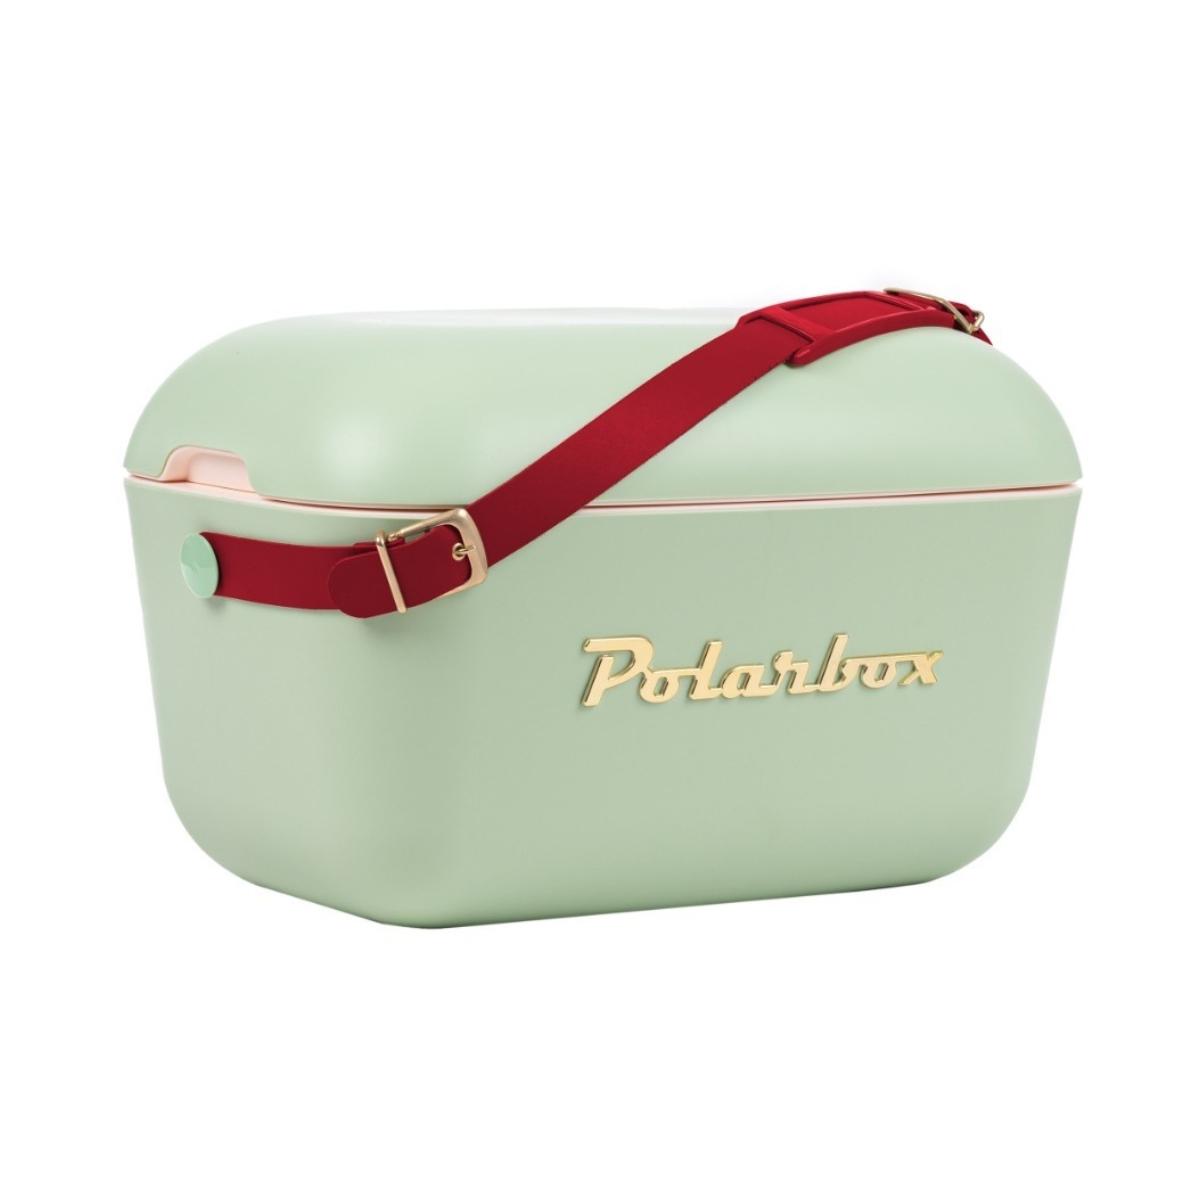 حافظة طعام مع حزام جلد 12 لتر أخضر زيتوني بولار بوكس Polarbox Christmas Cooler Box Olive